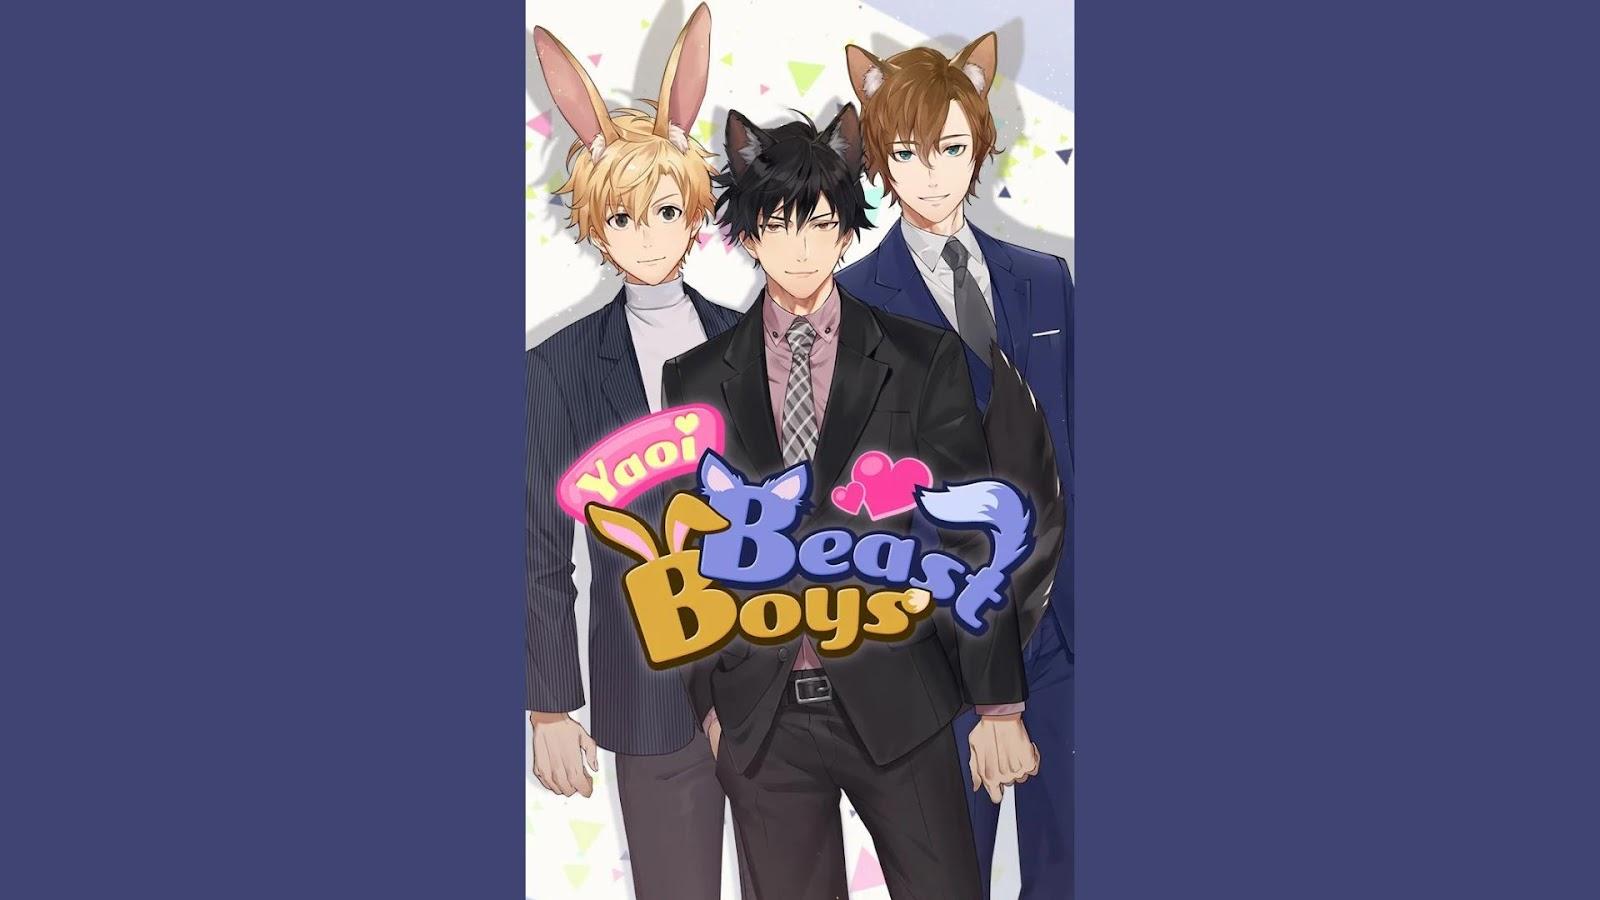 Yaoi Beast Boys: Anime Romance 